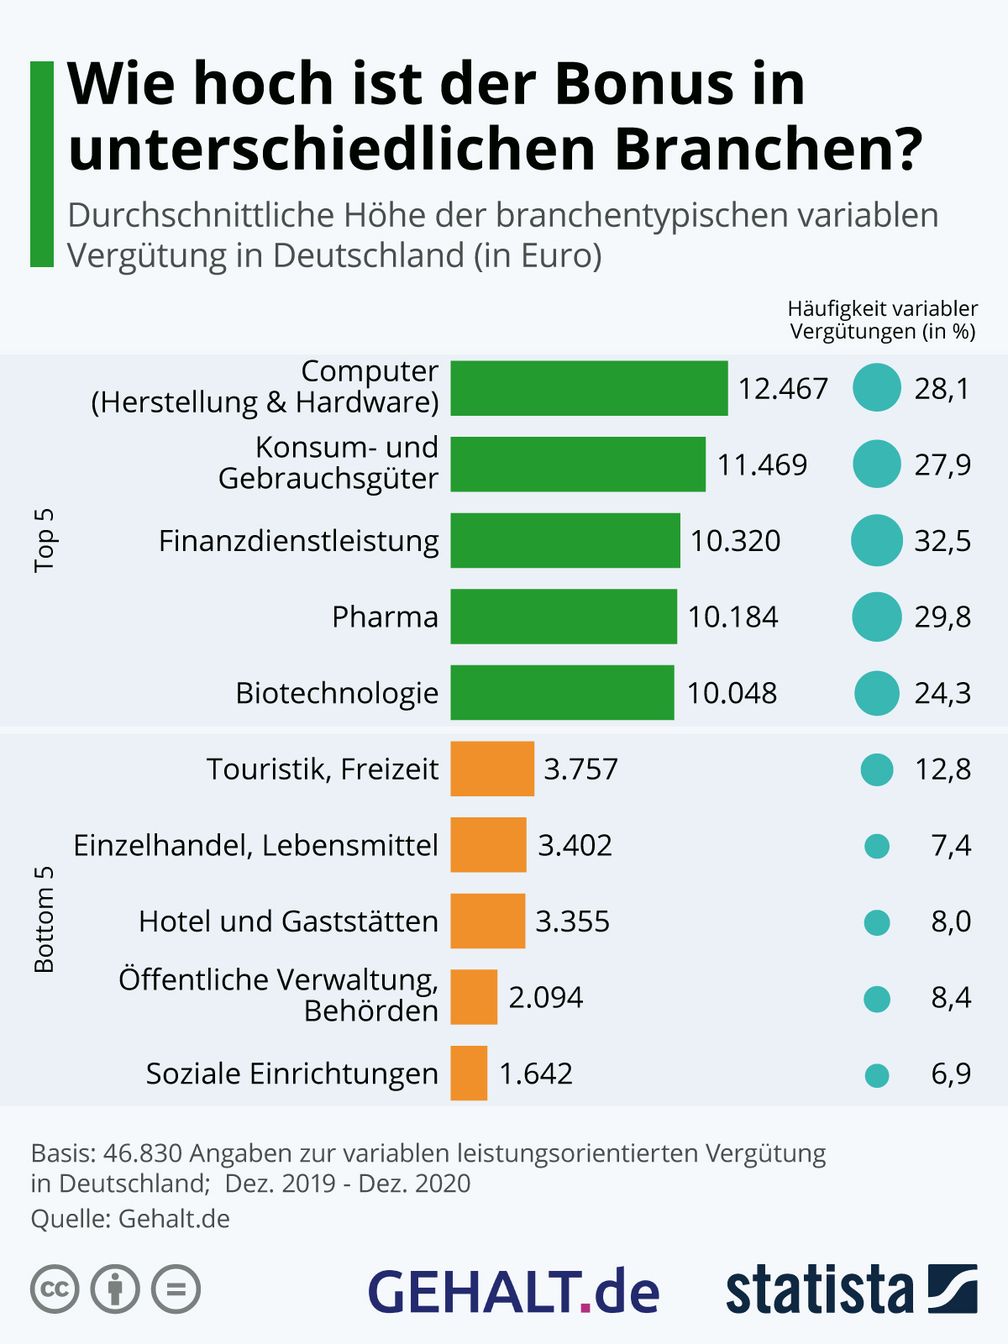 Durchschnittliche Höhe der branchentypischen variablen Vergütung (in Euro). Bild: Statista & GEHALT.de Fotograf: Gehalt.de